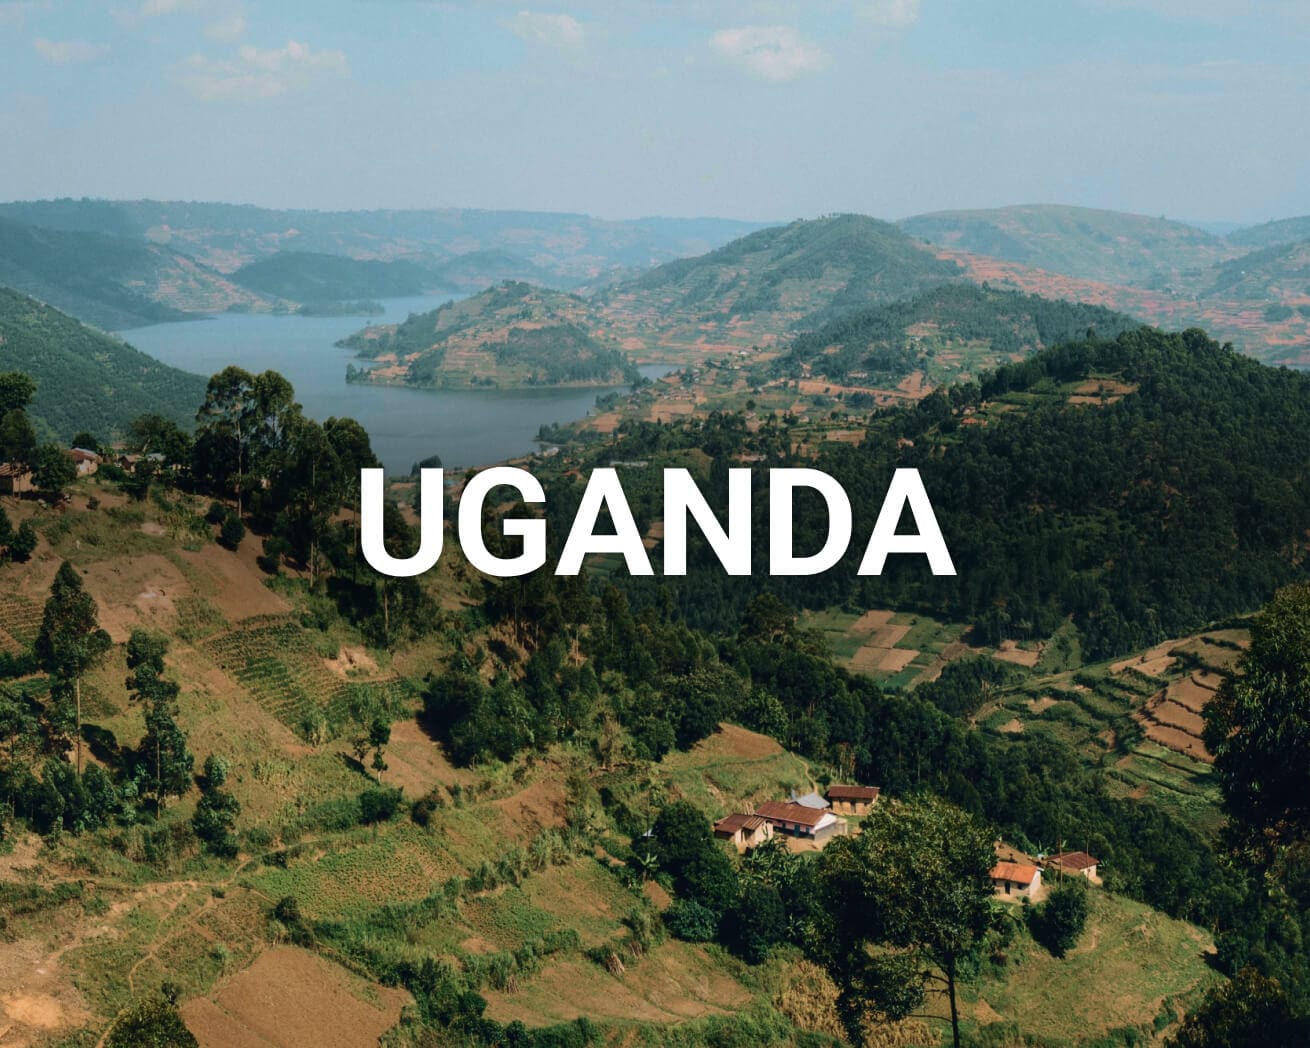 Uganda landscape